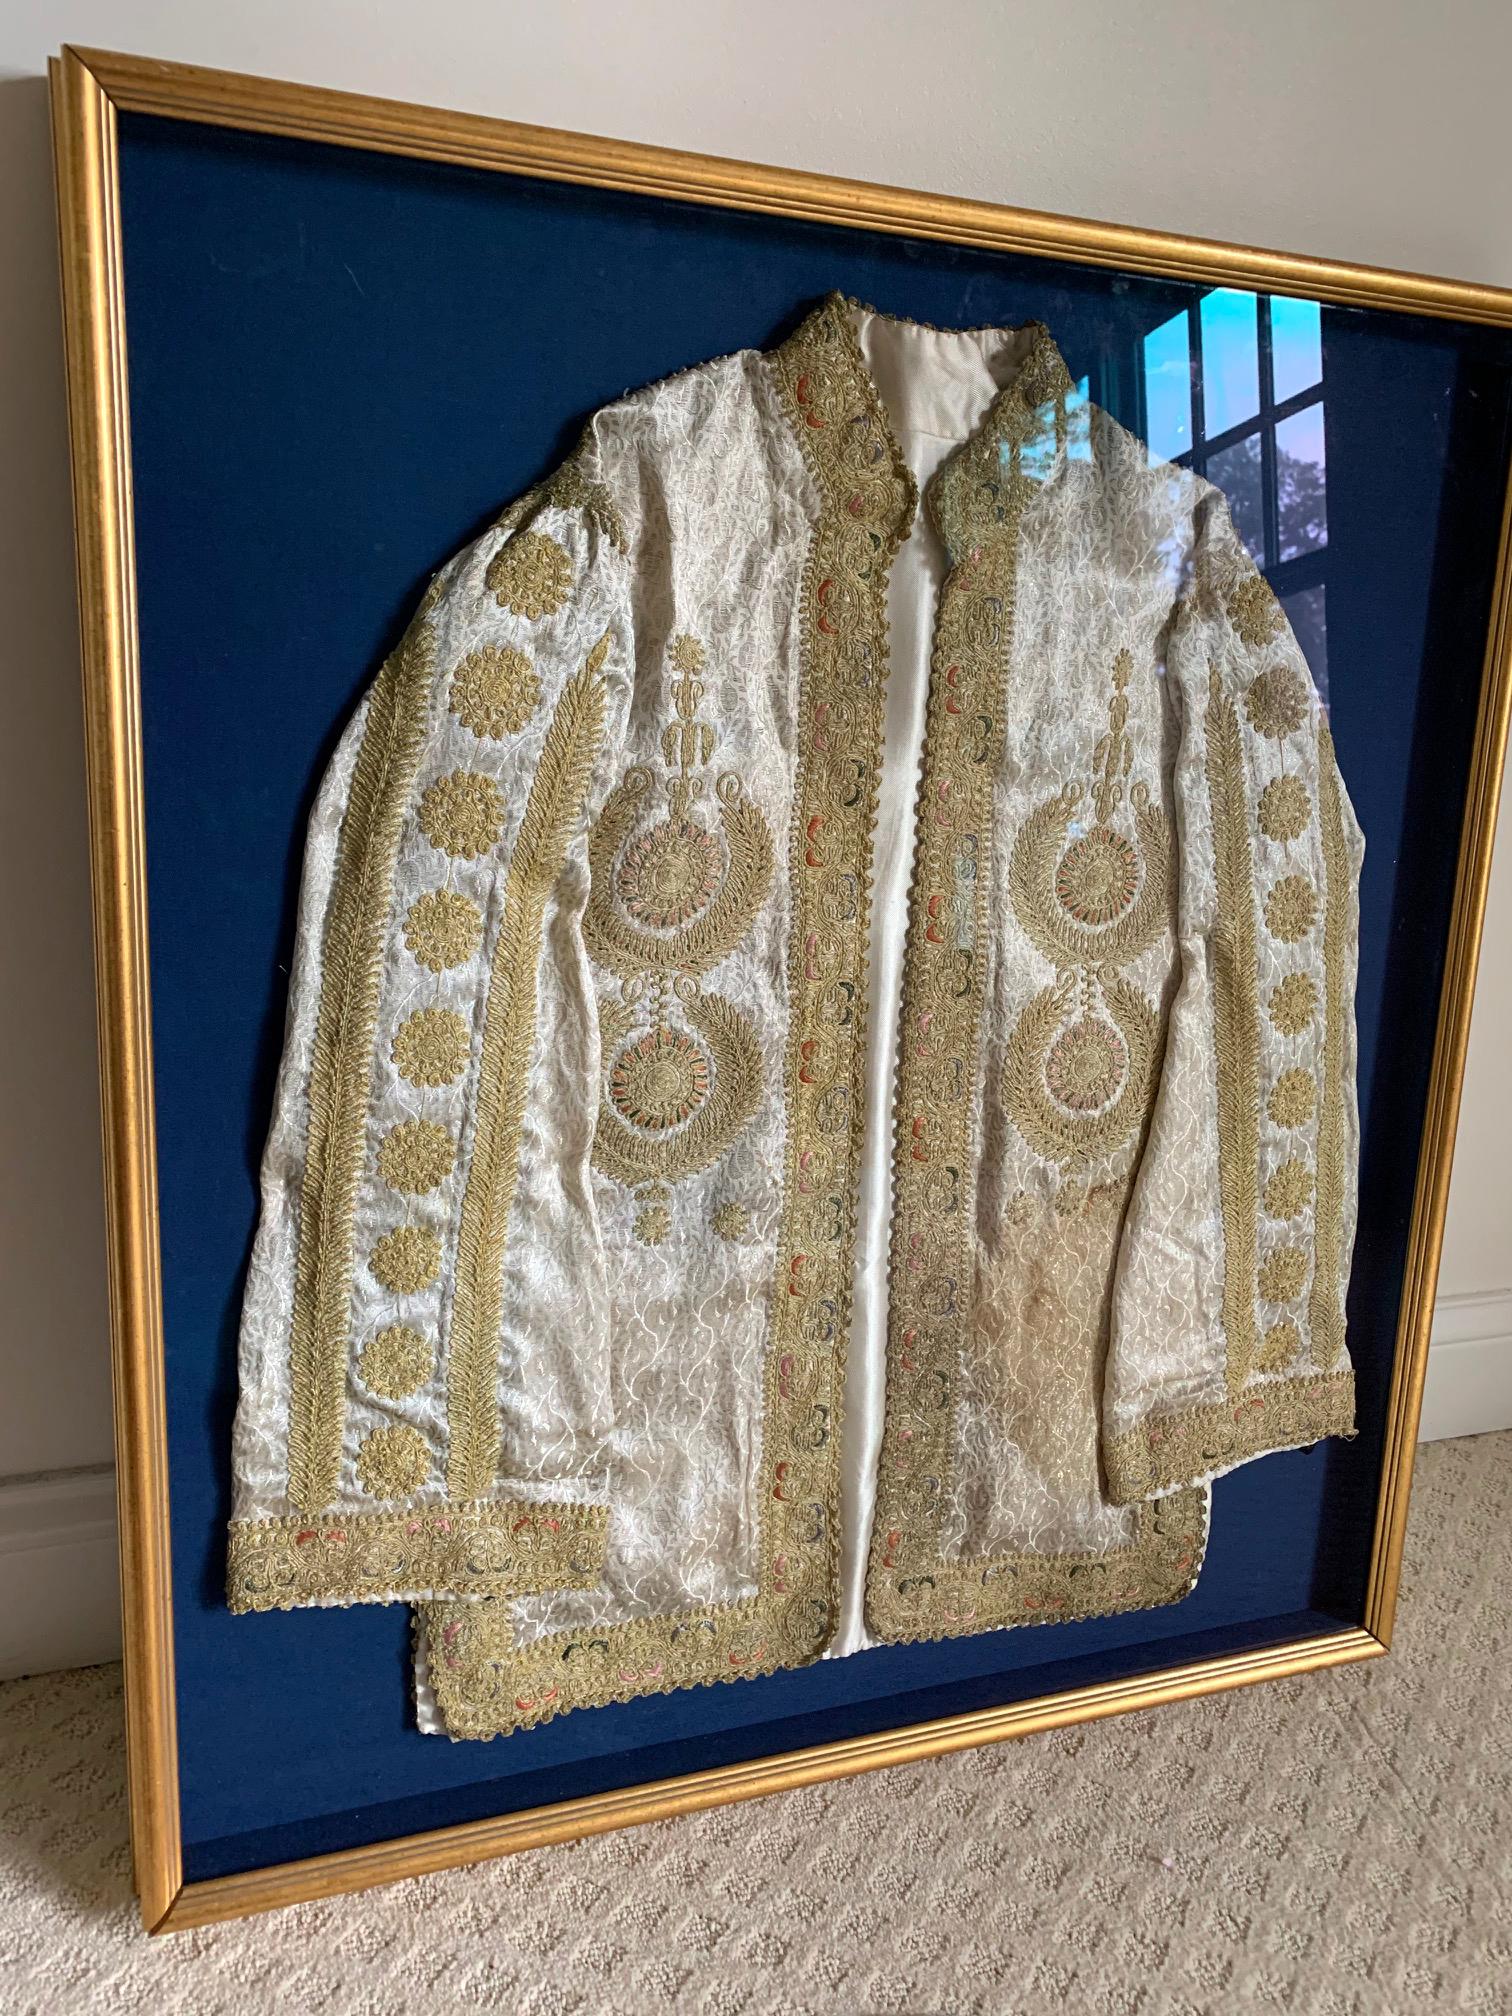 Un manteau turc somptueusement décoré, probablement de la période de l'Empire ottoman vers le 19e siècle, présenté dans un cadre doré en boîte à ombre avec une doublure en tissu bleu foncé. La veste était faite d'un brocart à motifs damassés